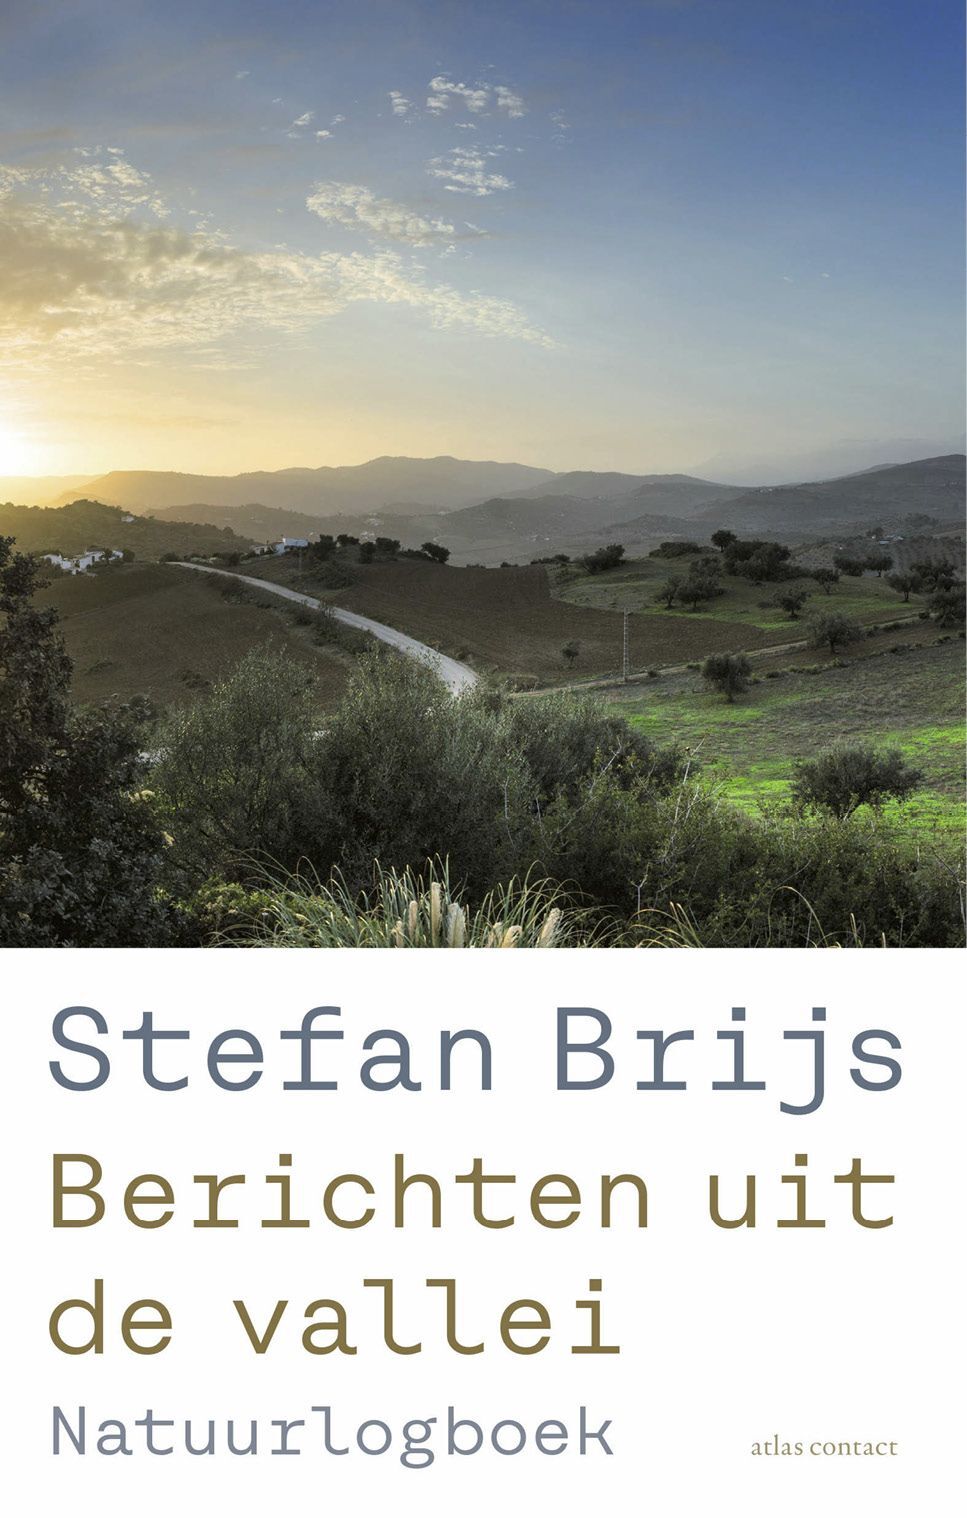 Stefan Brijs - Berichten uit de vallei